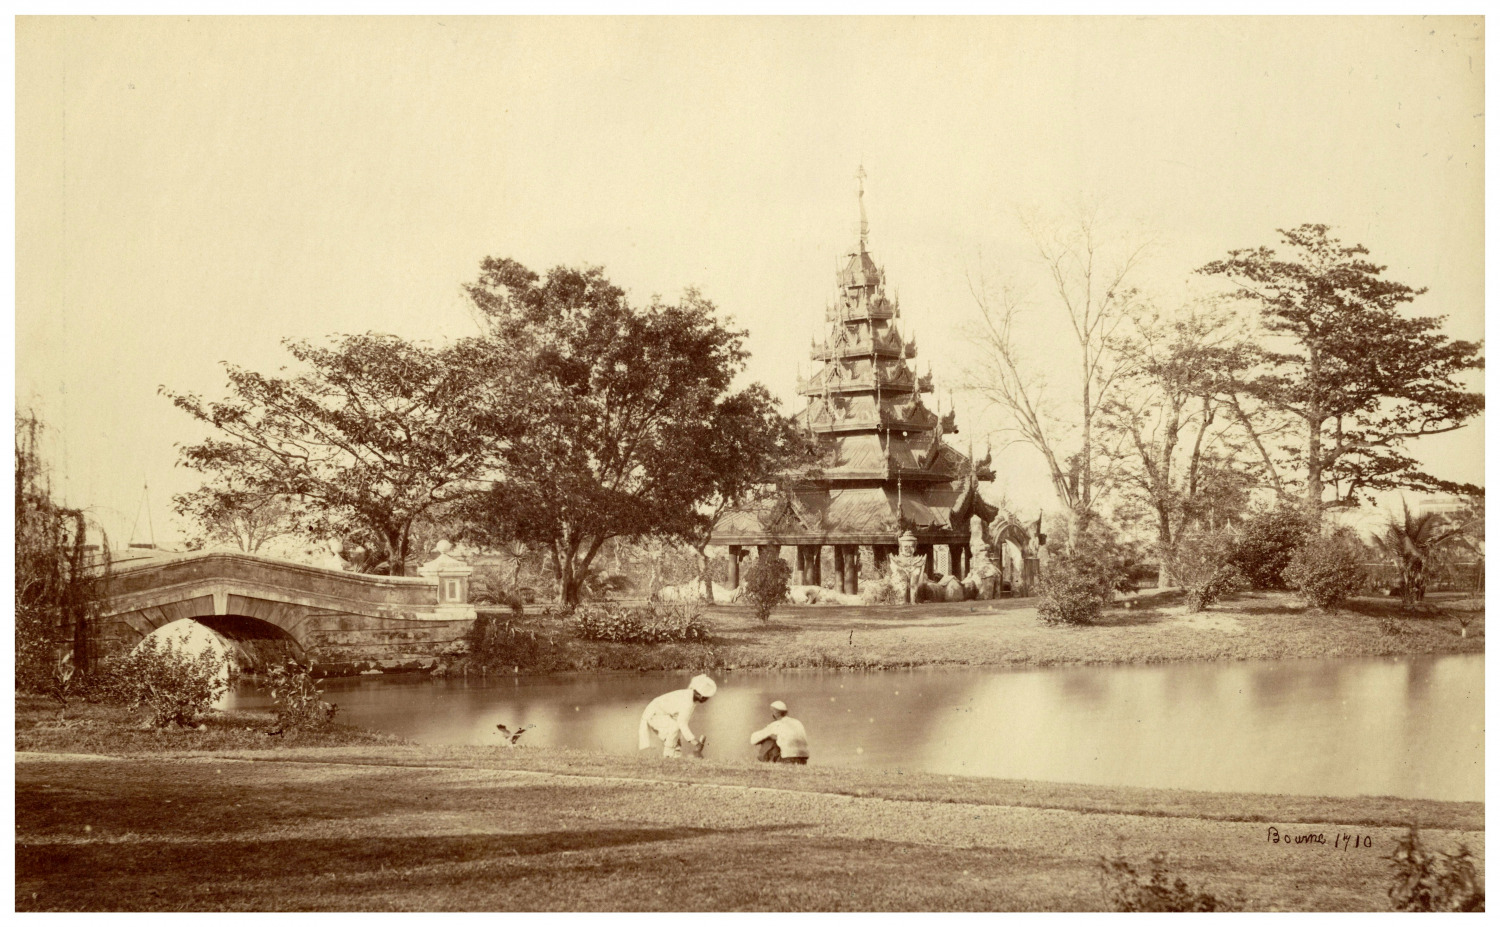 Samuel Bourne, India, Calcutta, In the Eden Gardens Vintage Albumen Print Strip